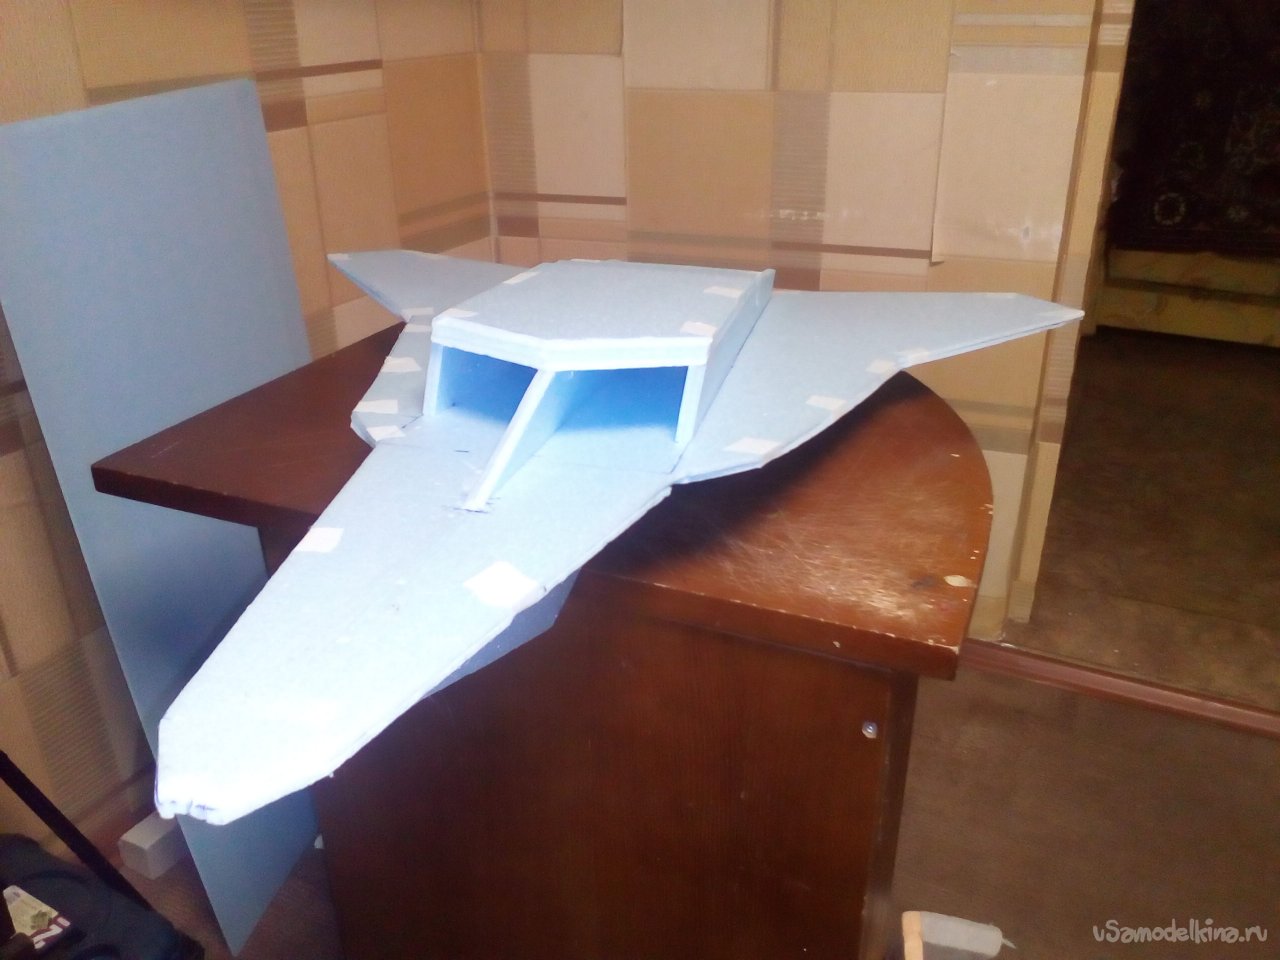 Модель самолеты видео. Создание модели самолета. Грач 1000. Склейка киля из ламелей.